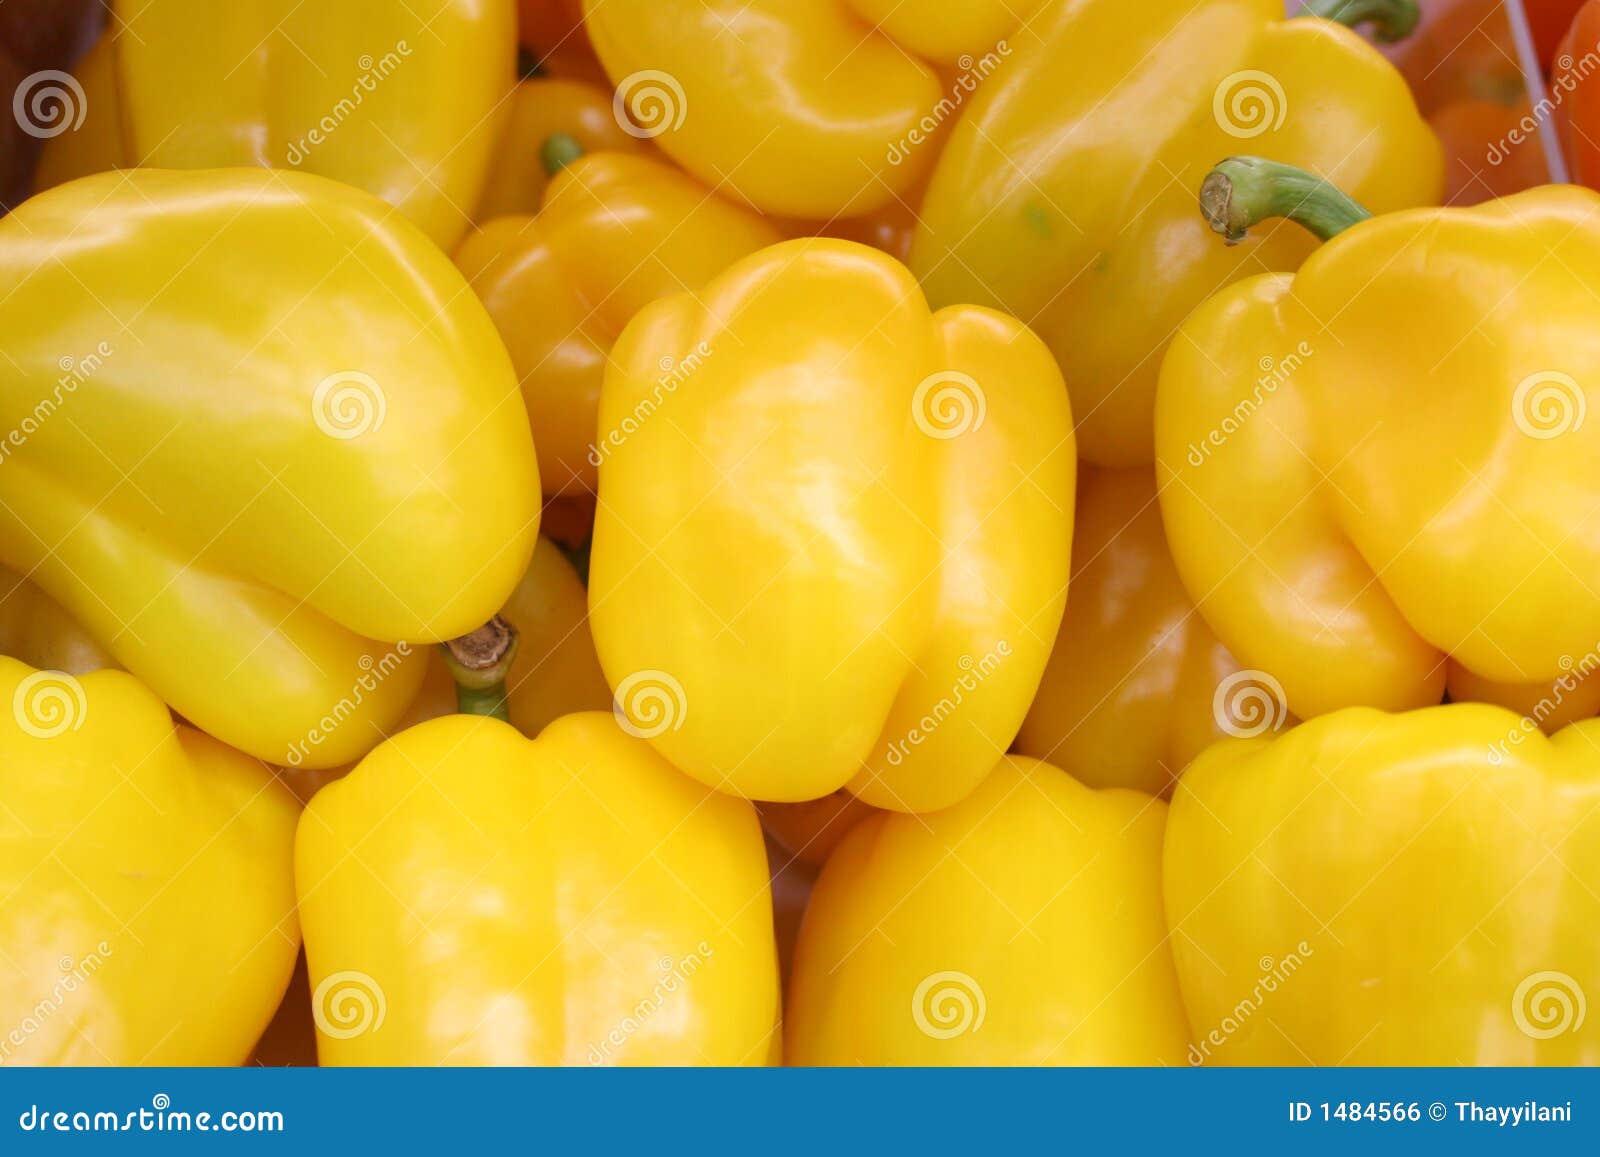 yellow capsicum